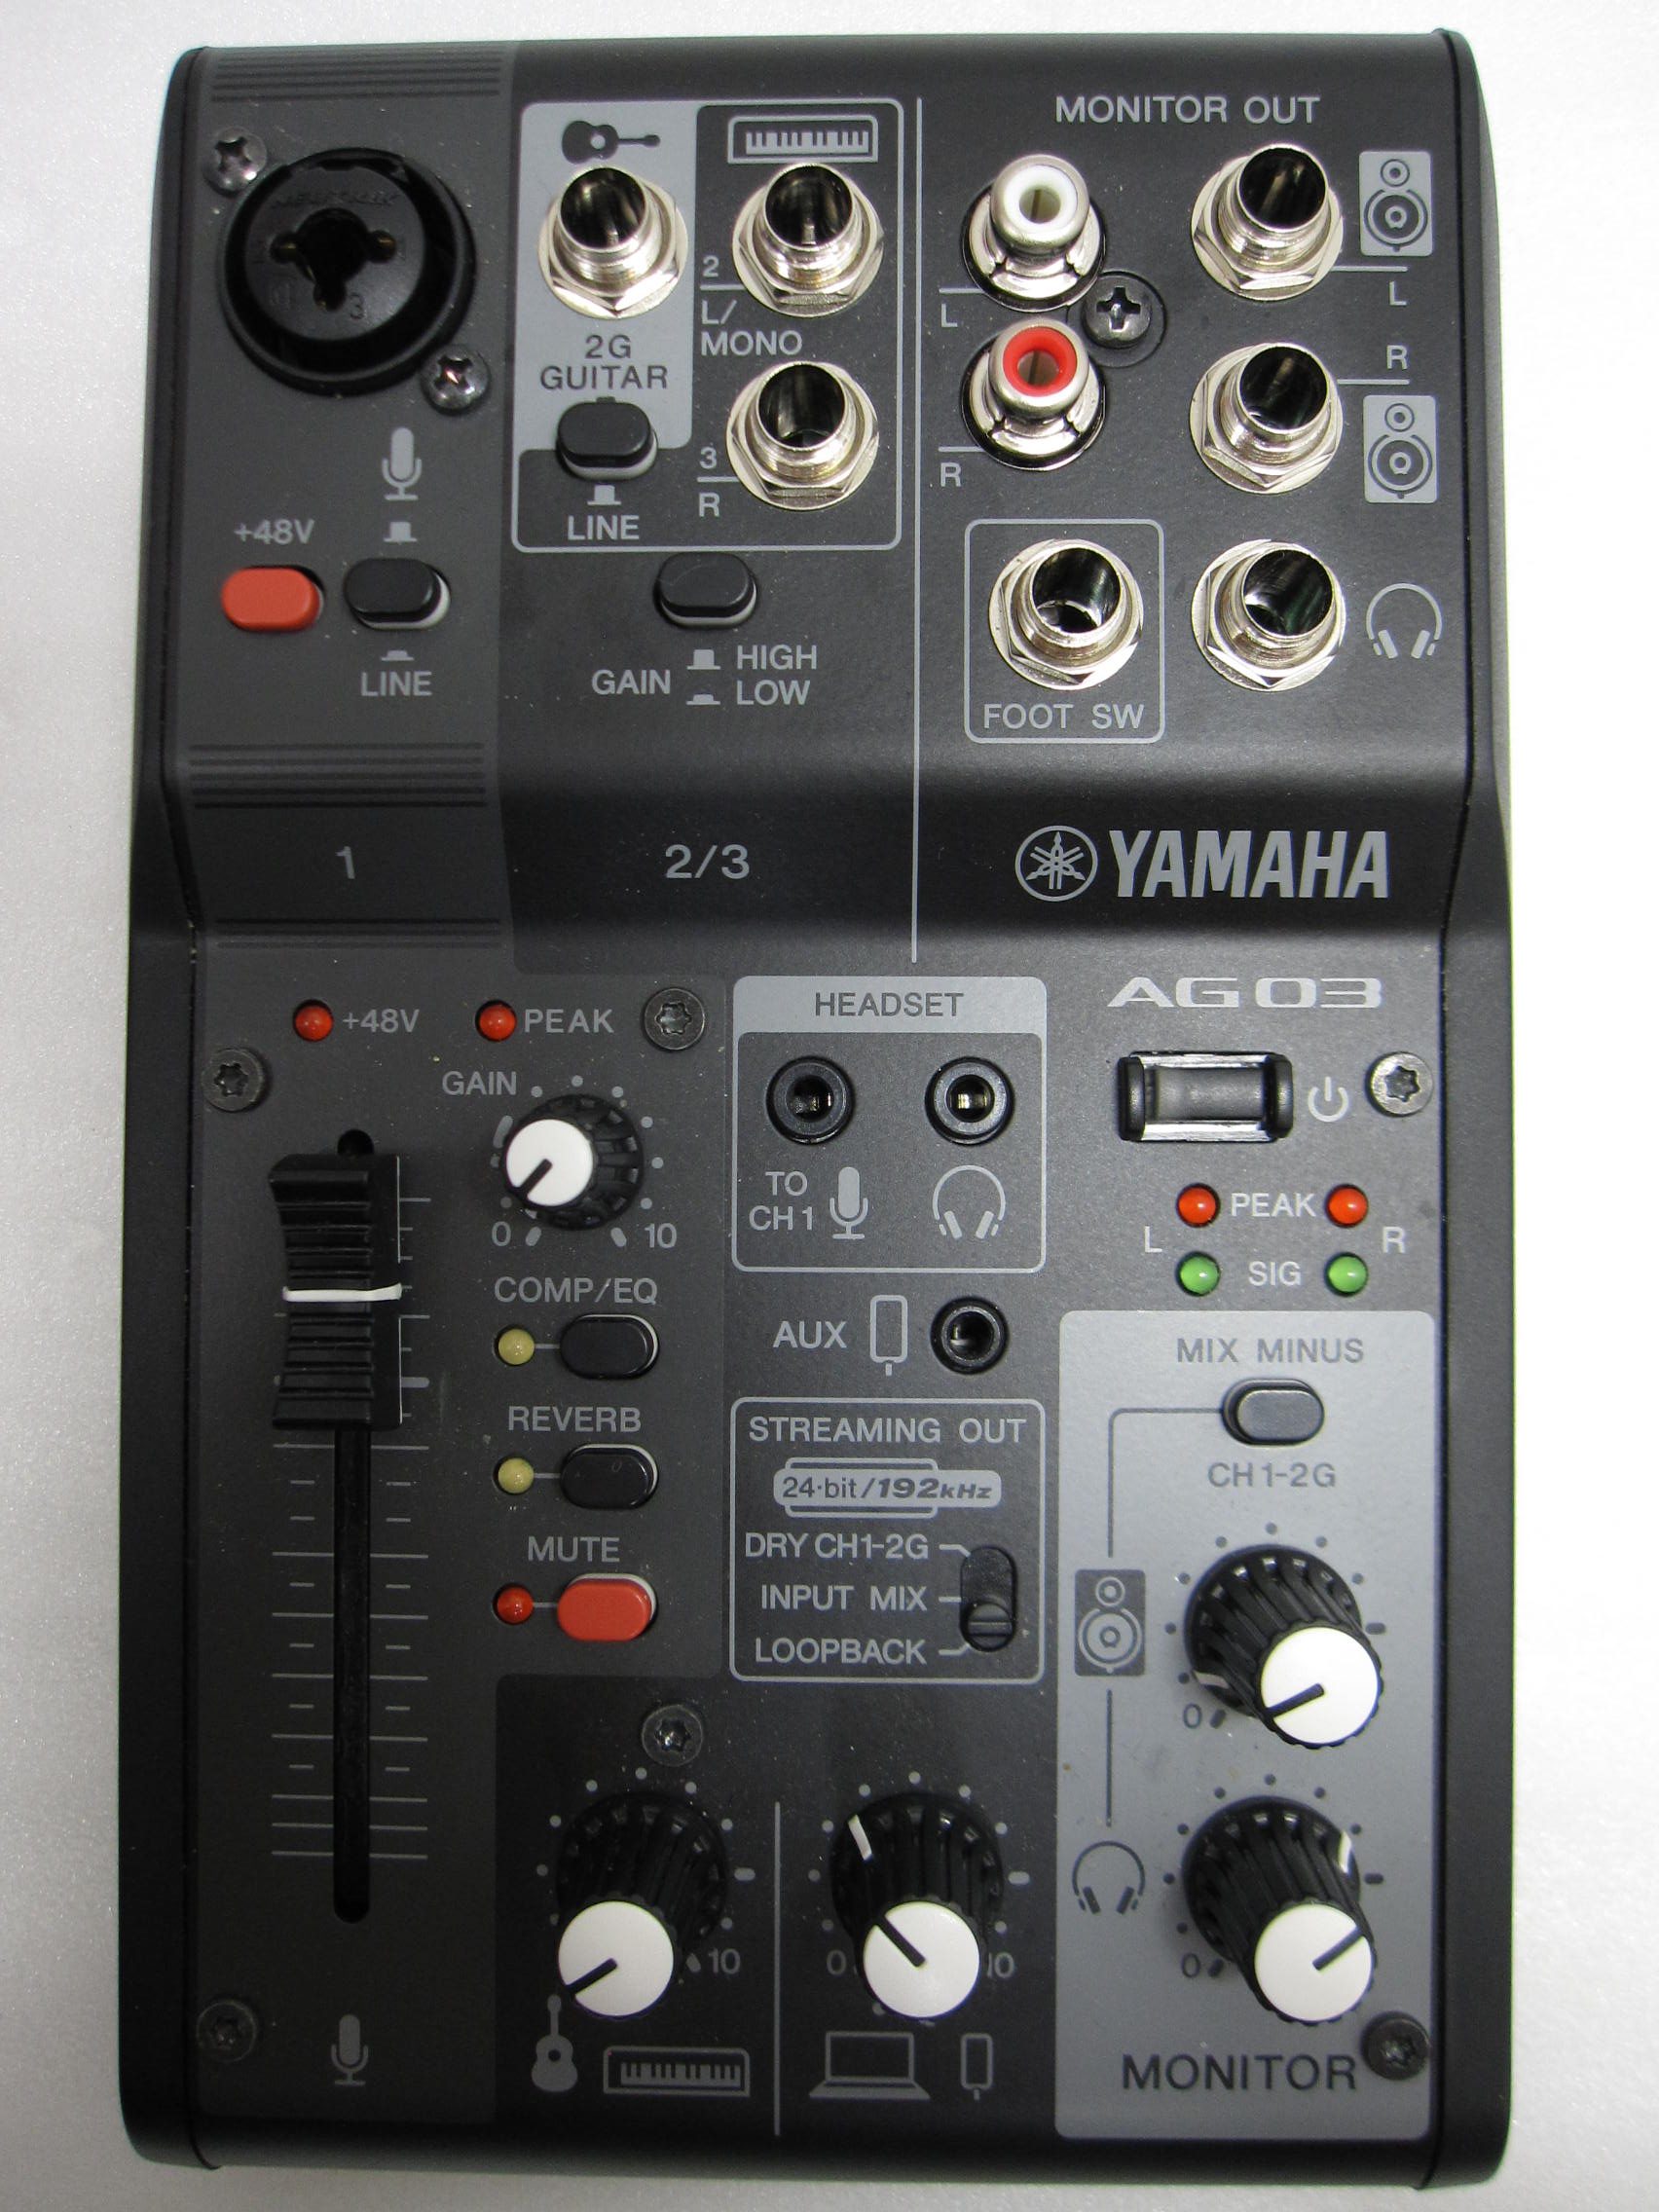 【音響機器】YAMAHA ヤマハ ライブストーミングミキサー AG03 mk2 / 買取専門 金沢買取プラザ